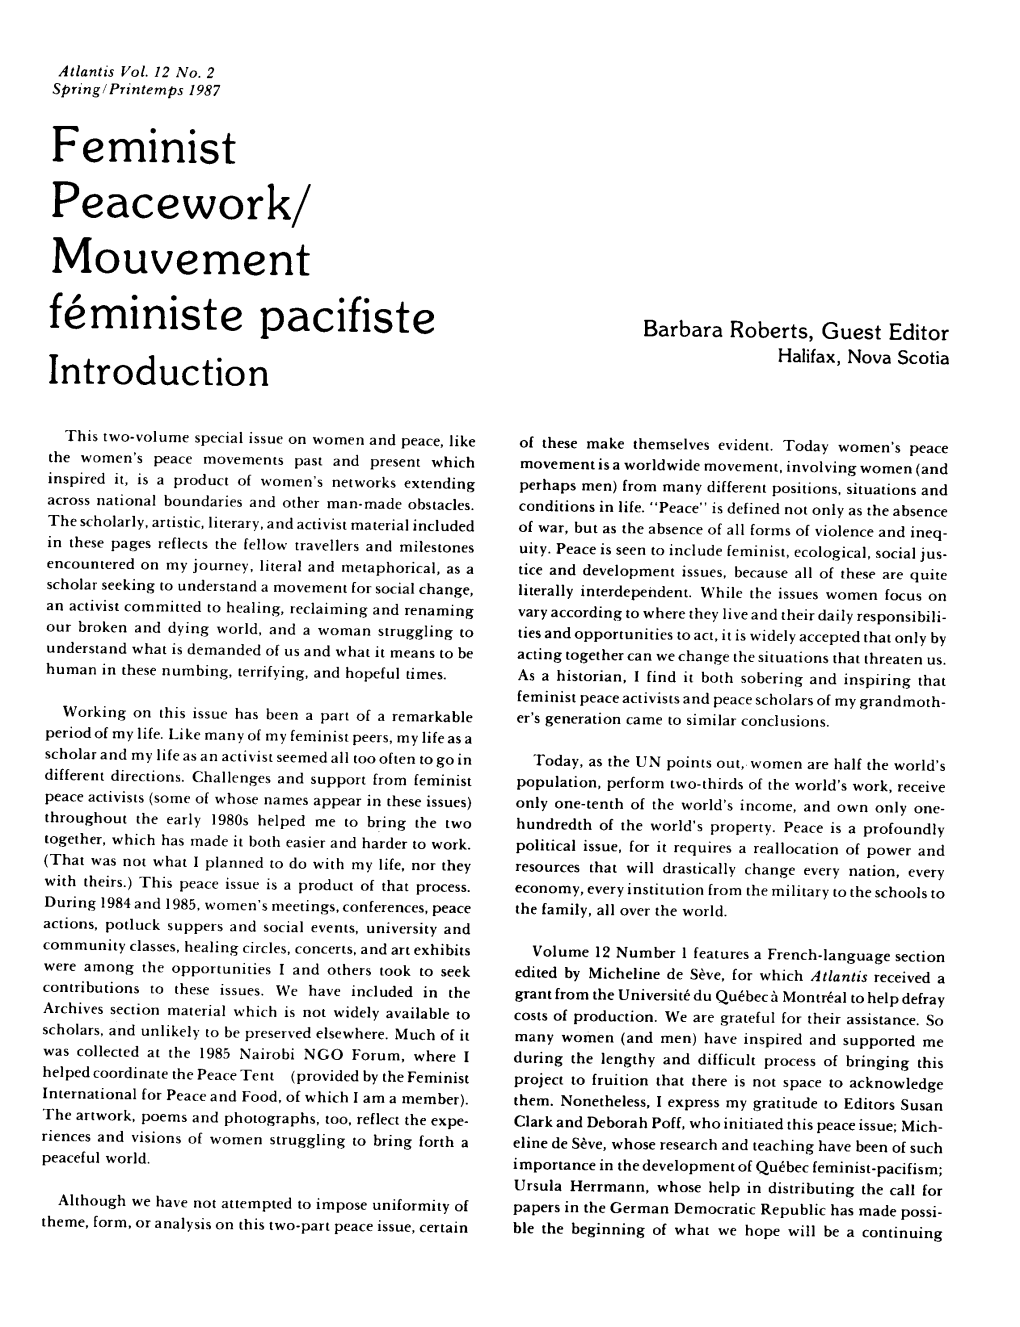 Feminist Peacework/ Mouvement Feministe Pacifiste